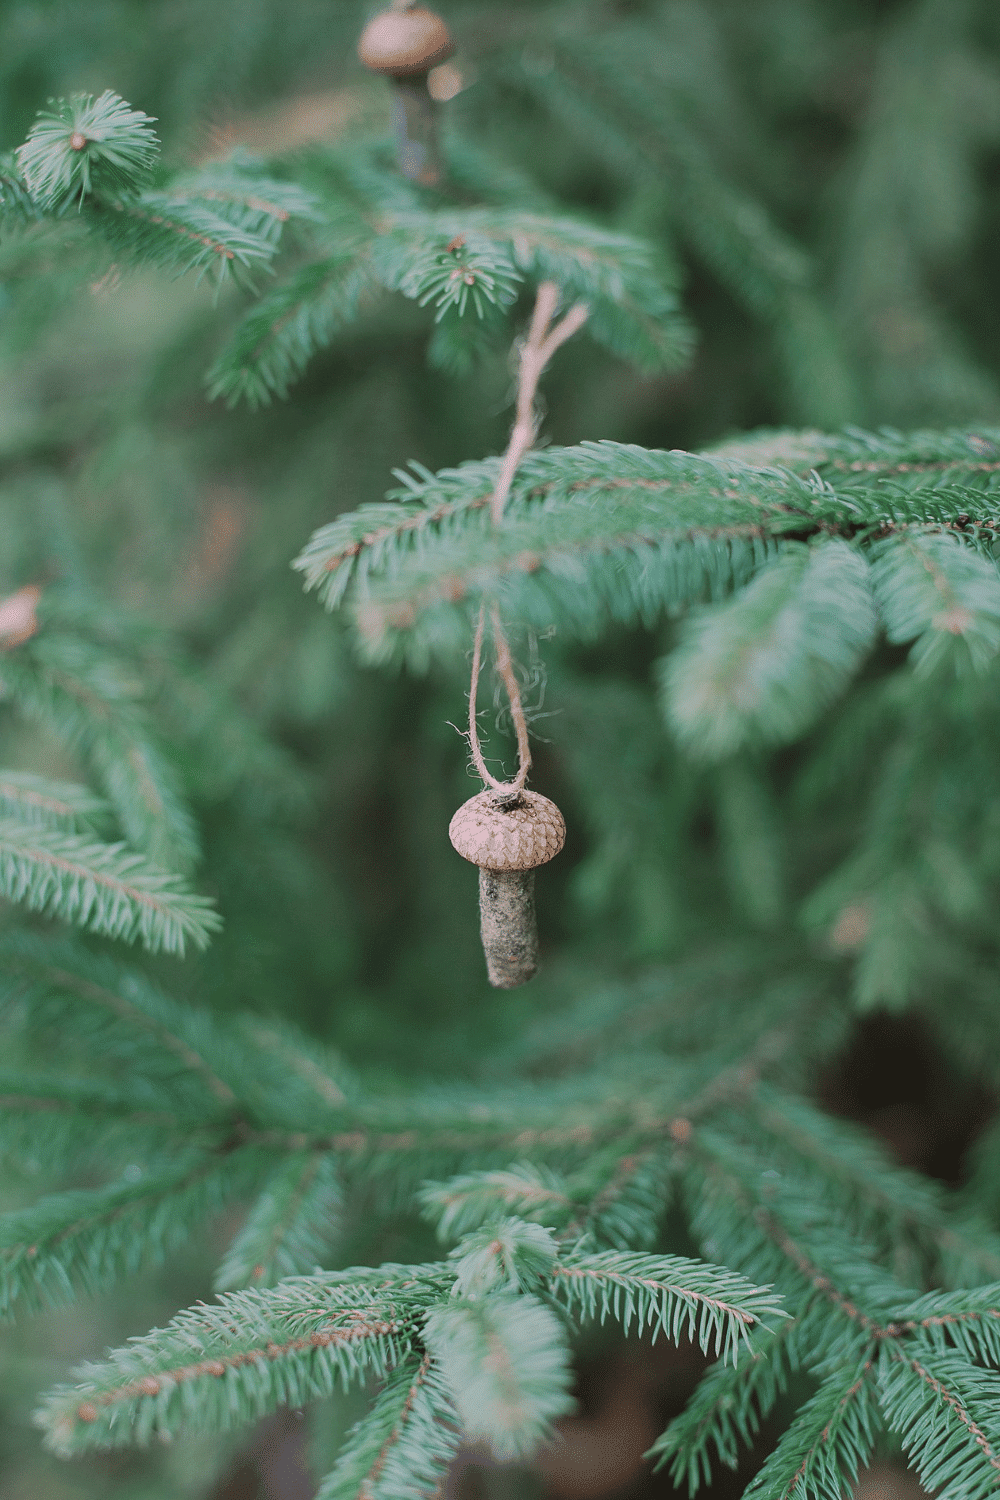 How to Make Acorn Cap Mushroom Ornaments